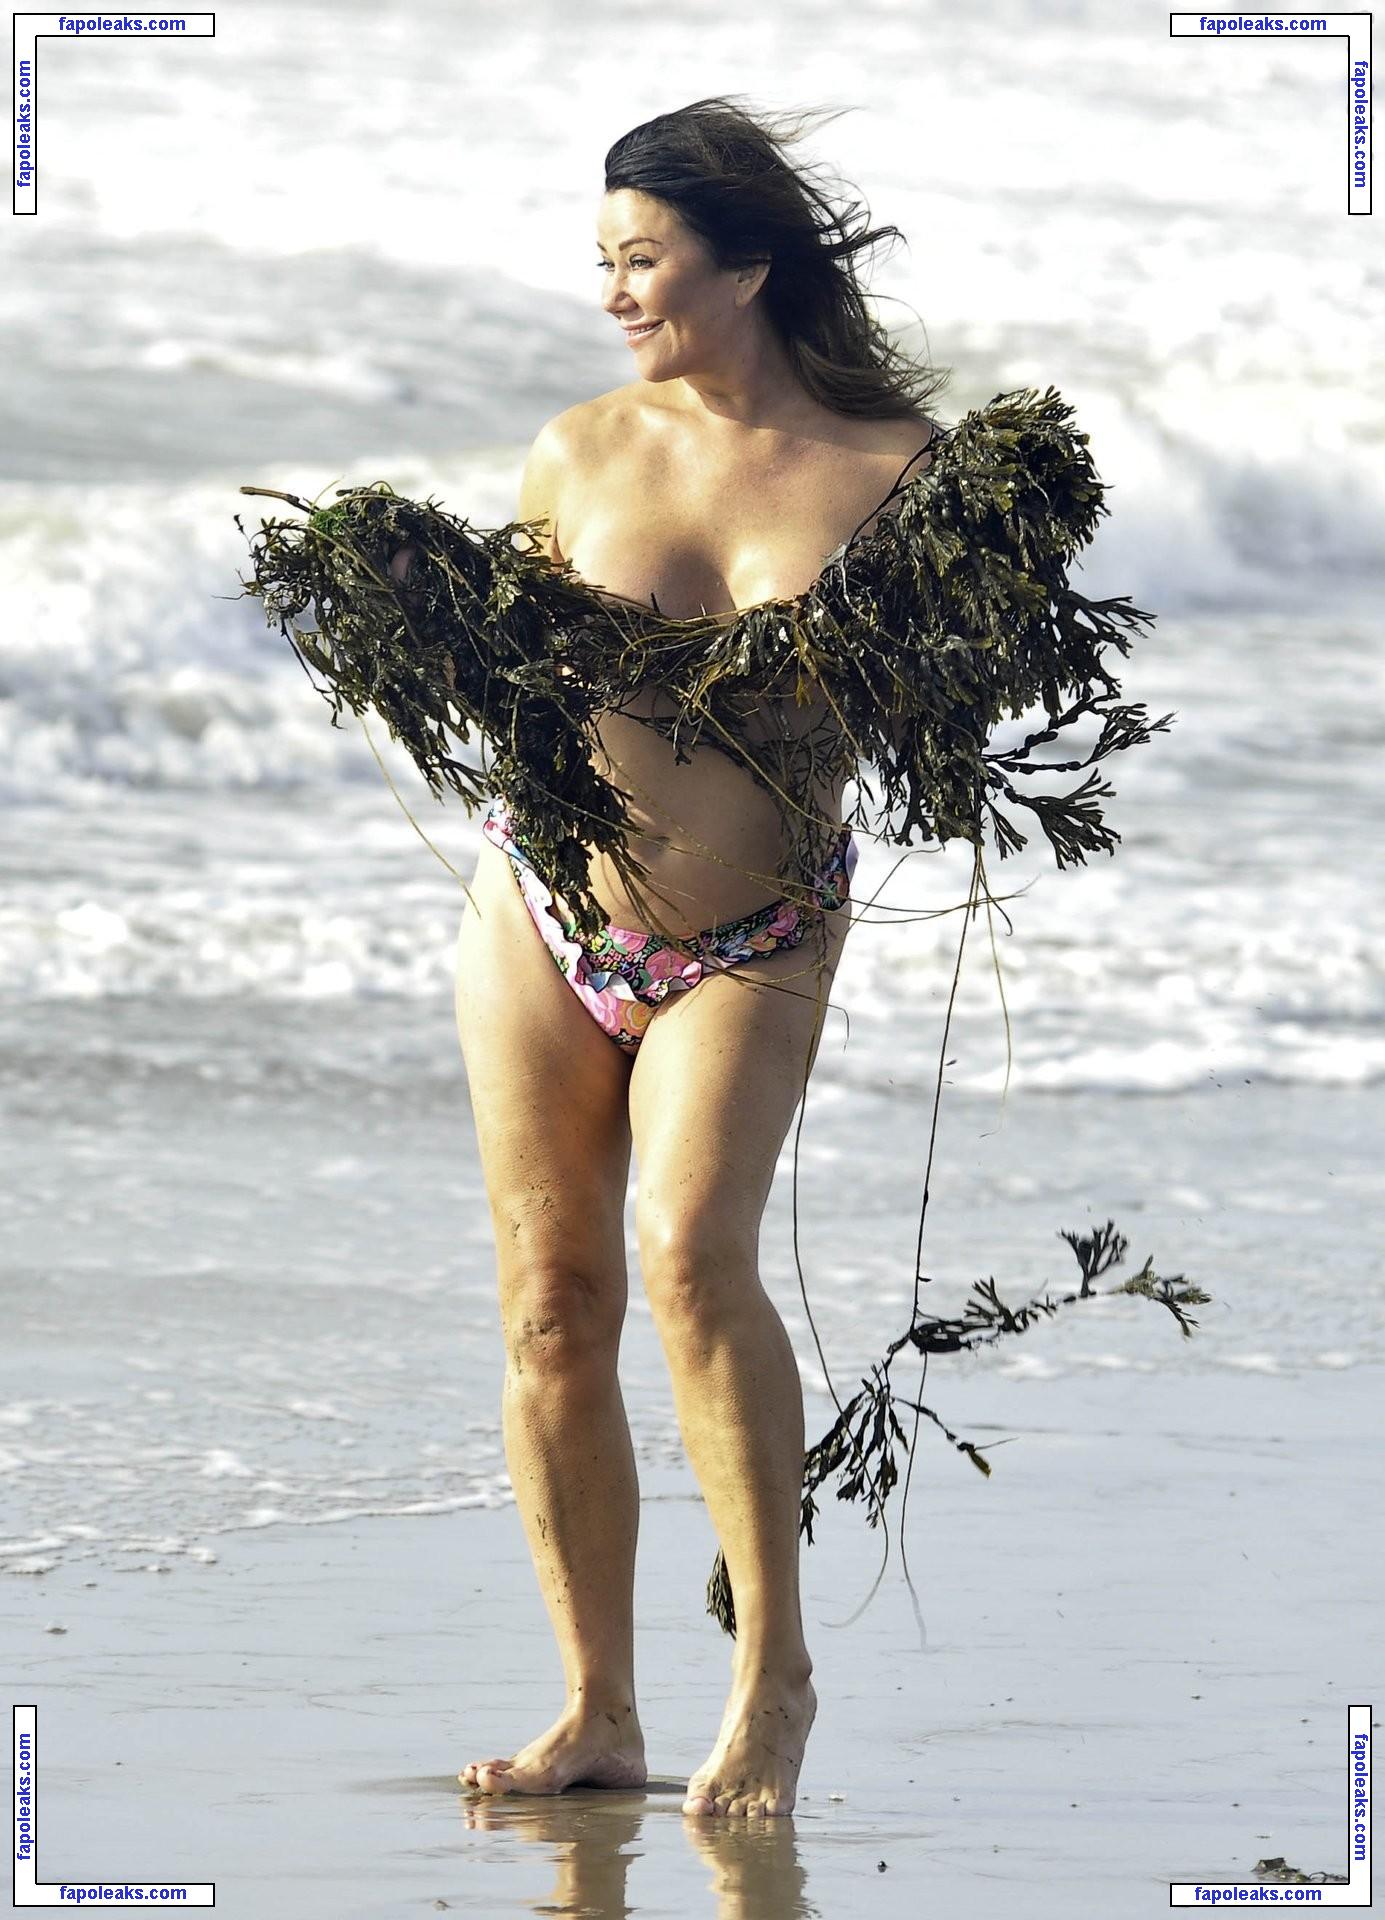 Lisa Appleton / mslisaappleton nude photo #2629 from OnlyFans